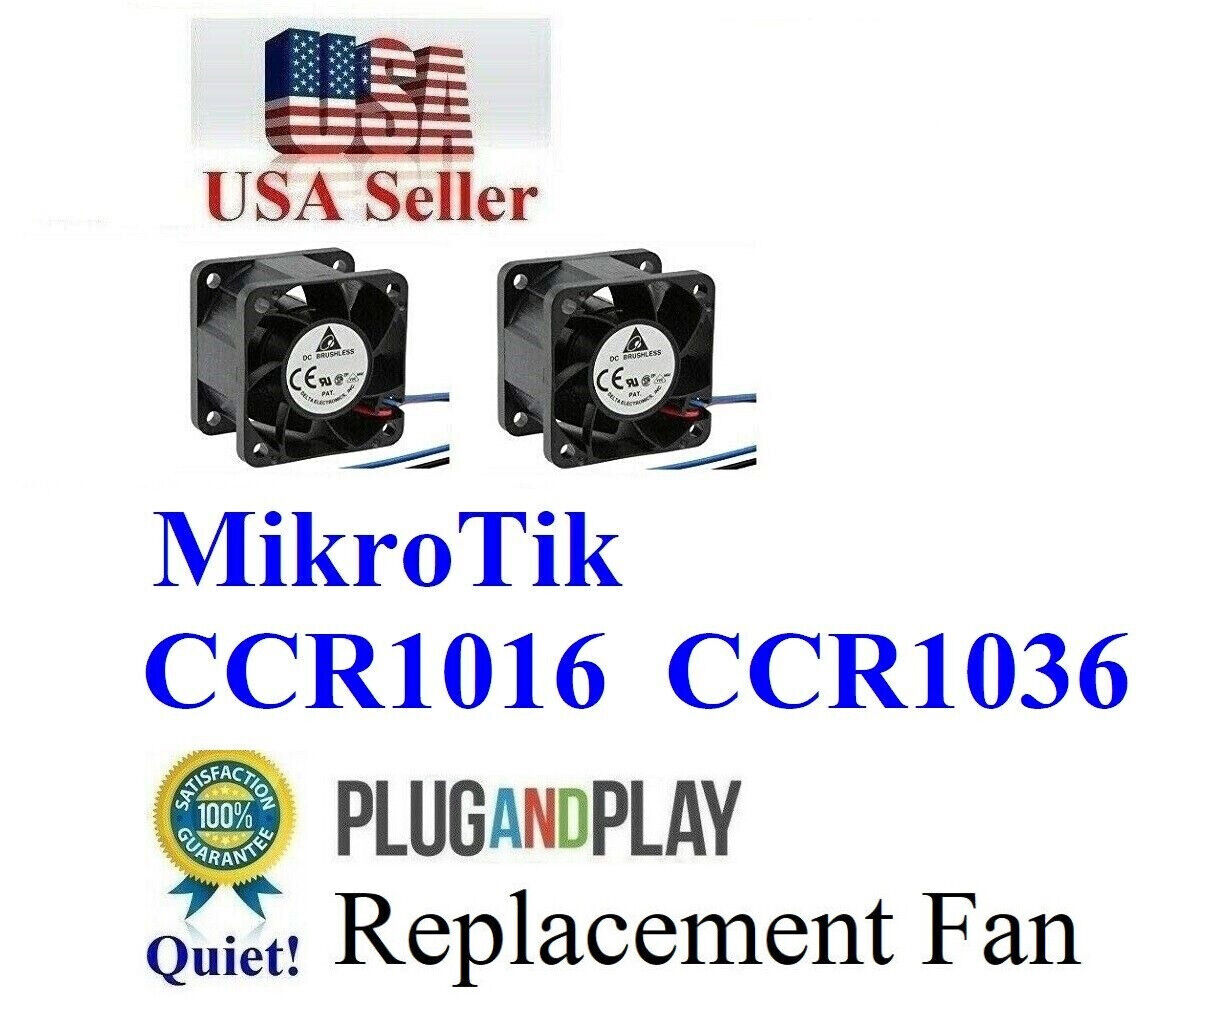 Lot 2x Delta replacement Fans for MikroTik CCR1036-8G-2S+ CCR1036-8G-2S+EM